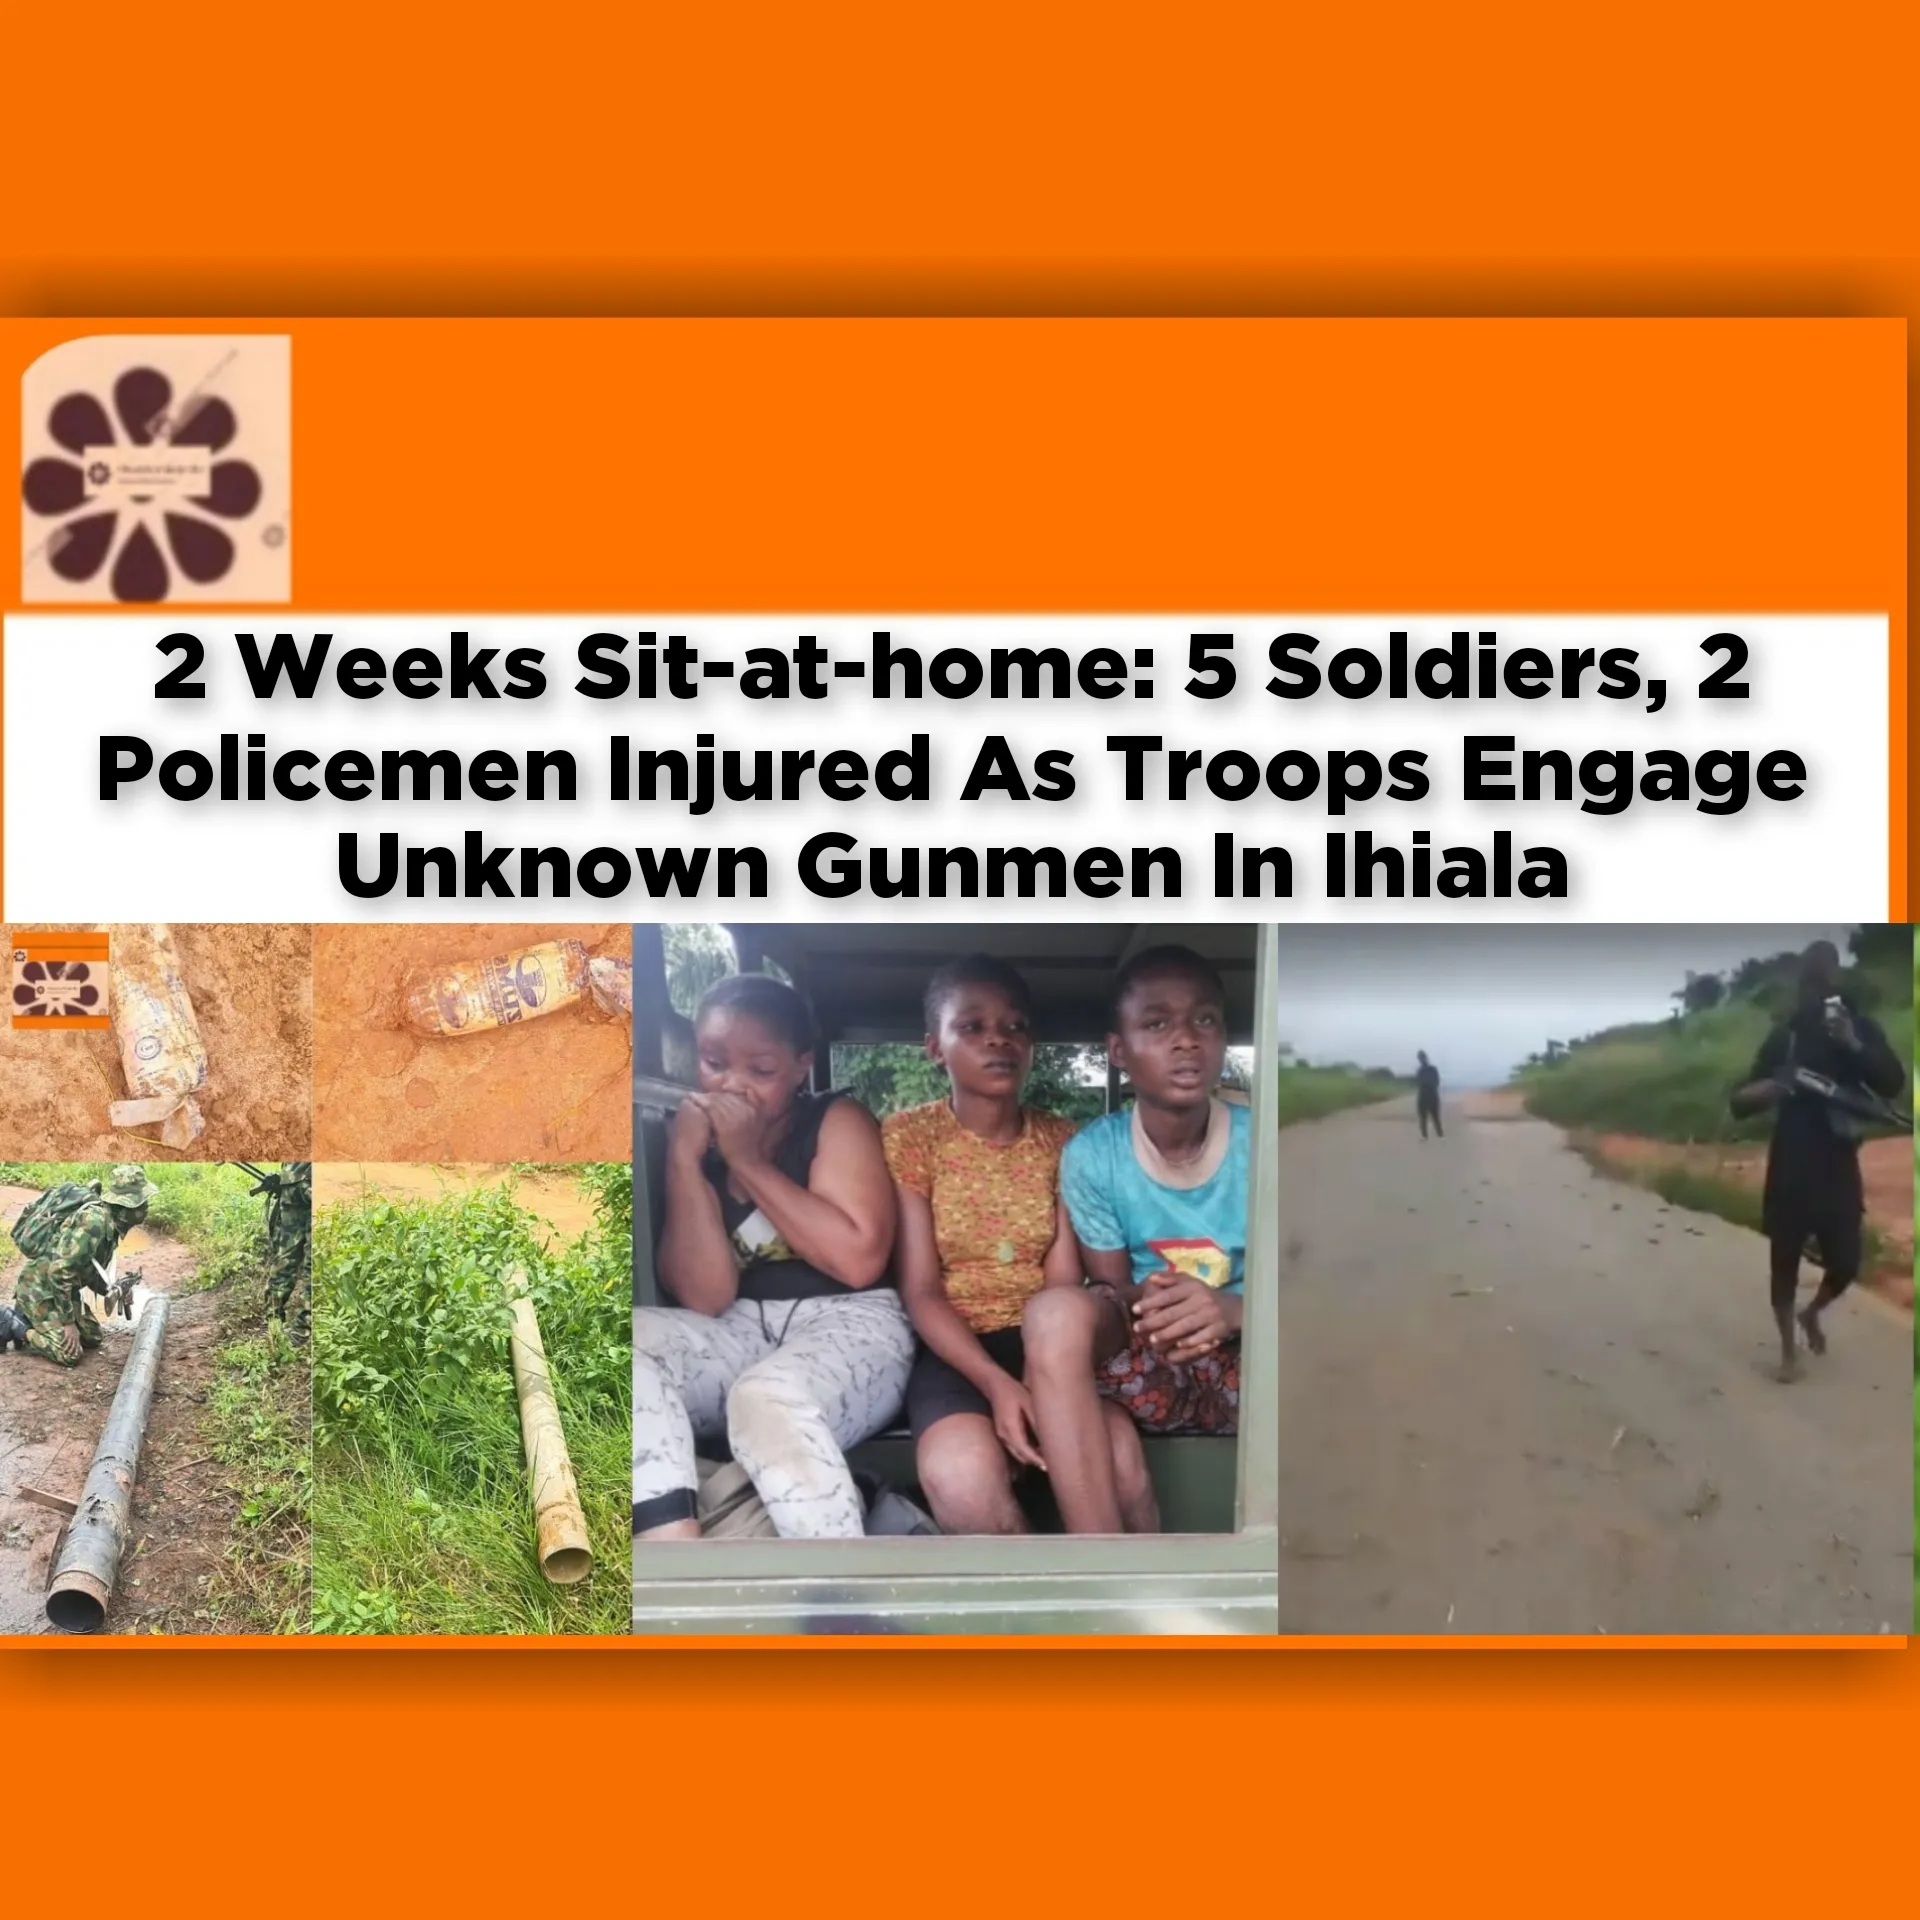 2 Weeks Sit-at-home: 5 Soldiers, 2 Policemen Injured As Troops Engage Unknown Gunmen In Ihiala